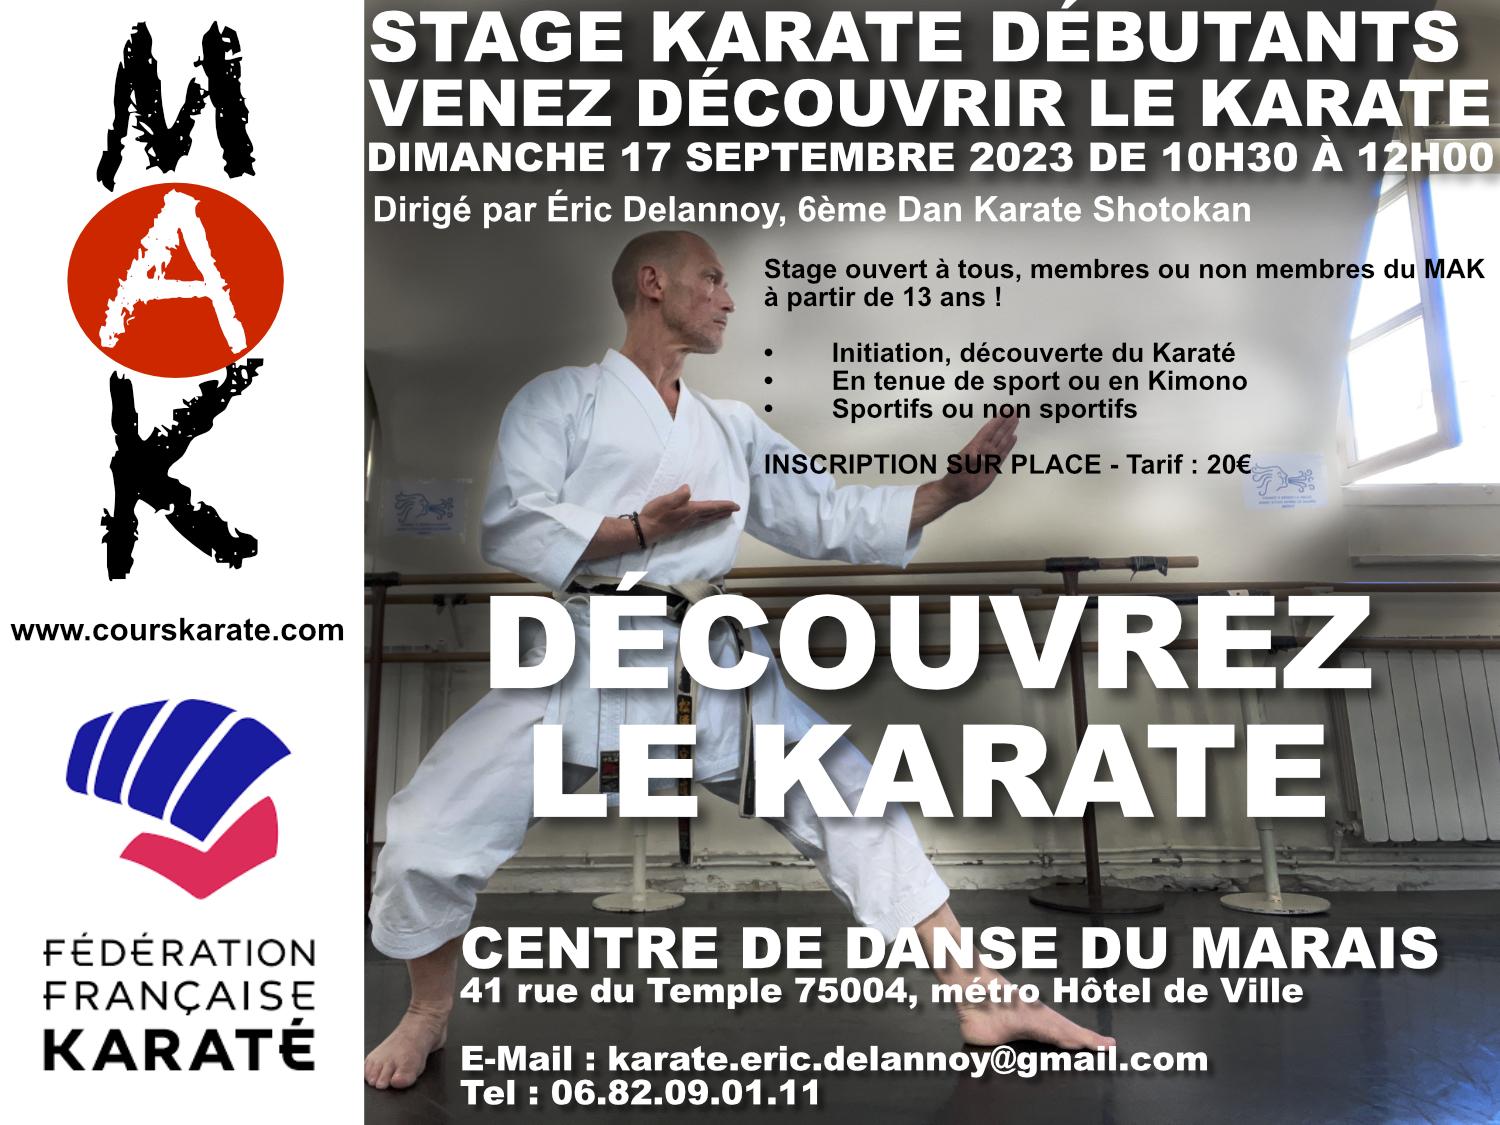 Karate dÃ©butants